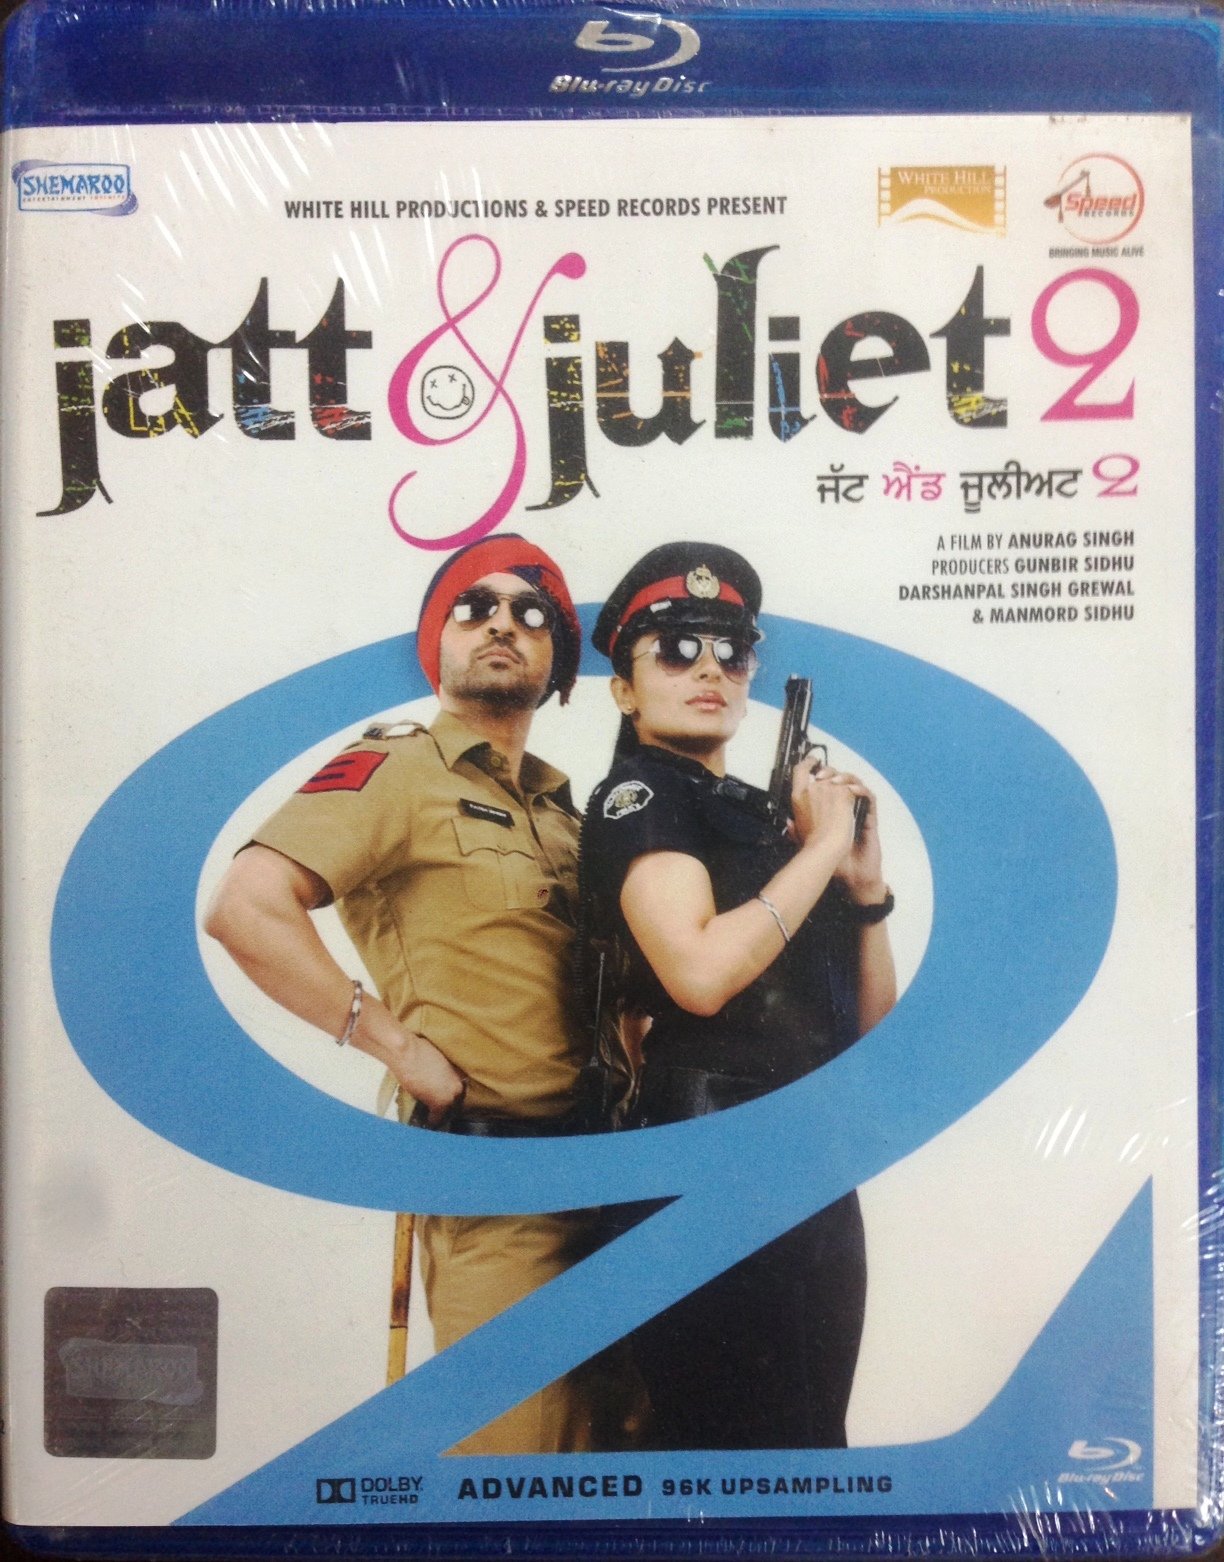 jatt-juliet-2-movie-purchase-or-watch-online